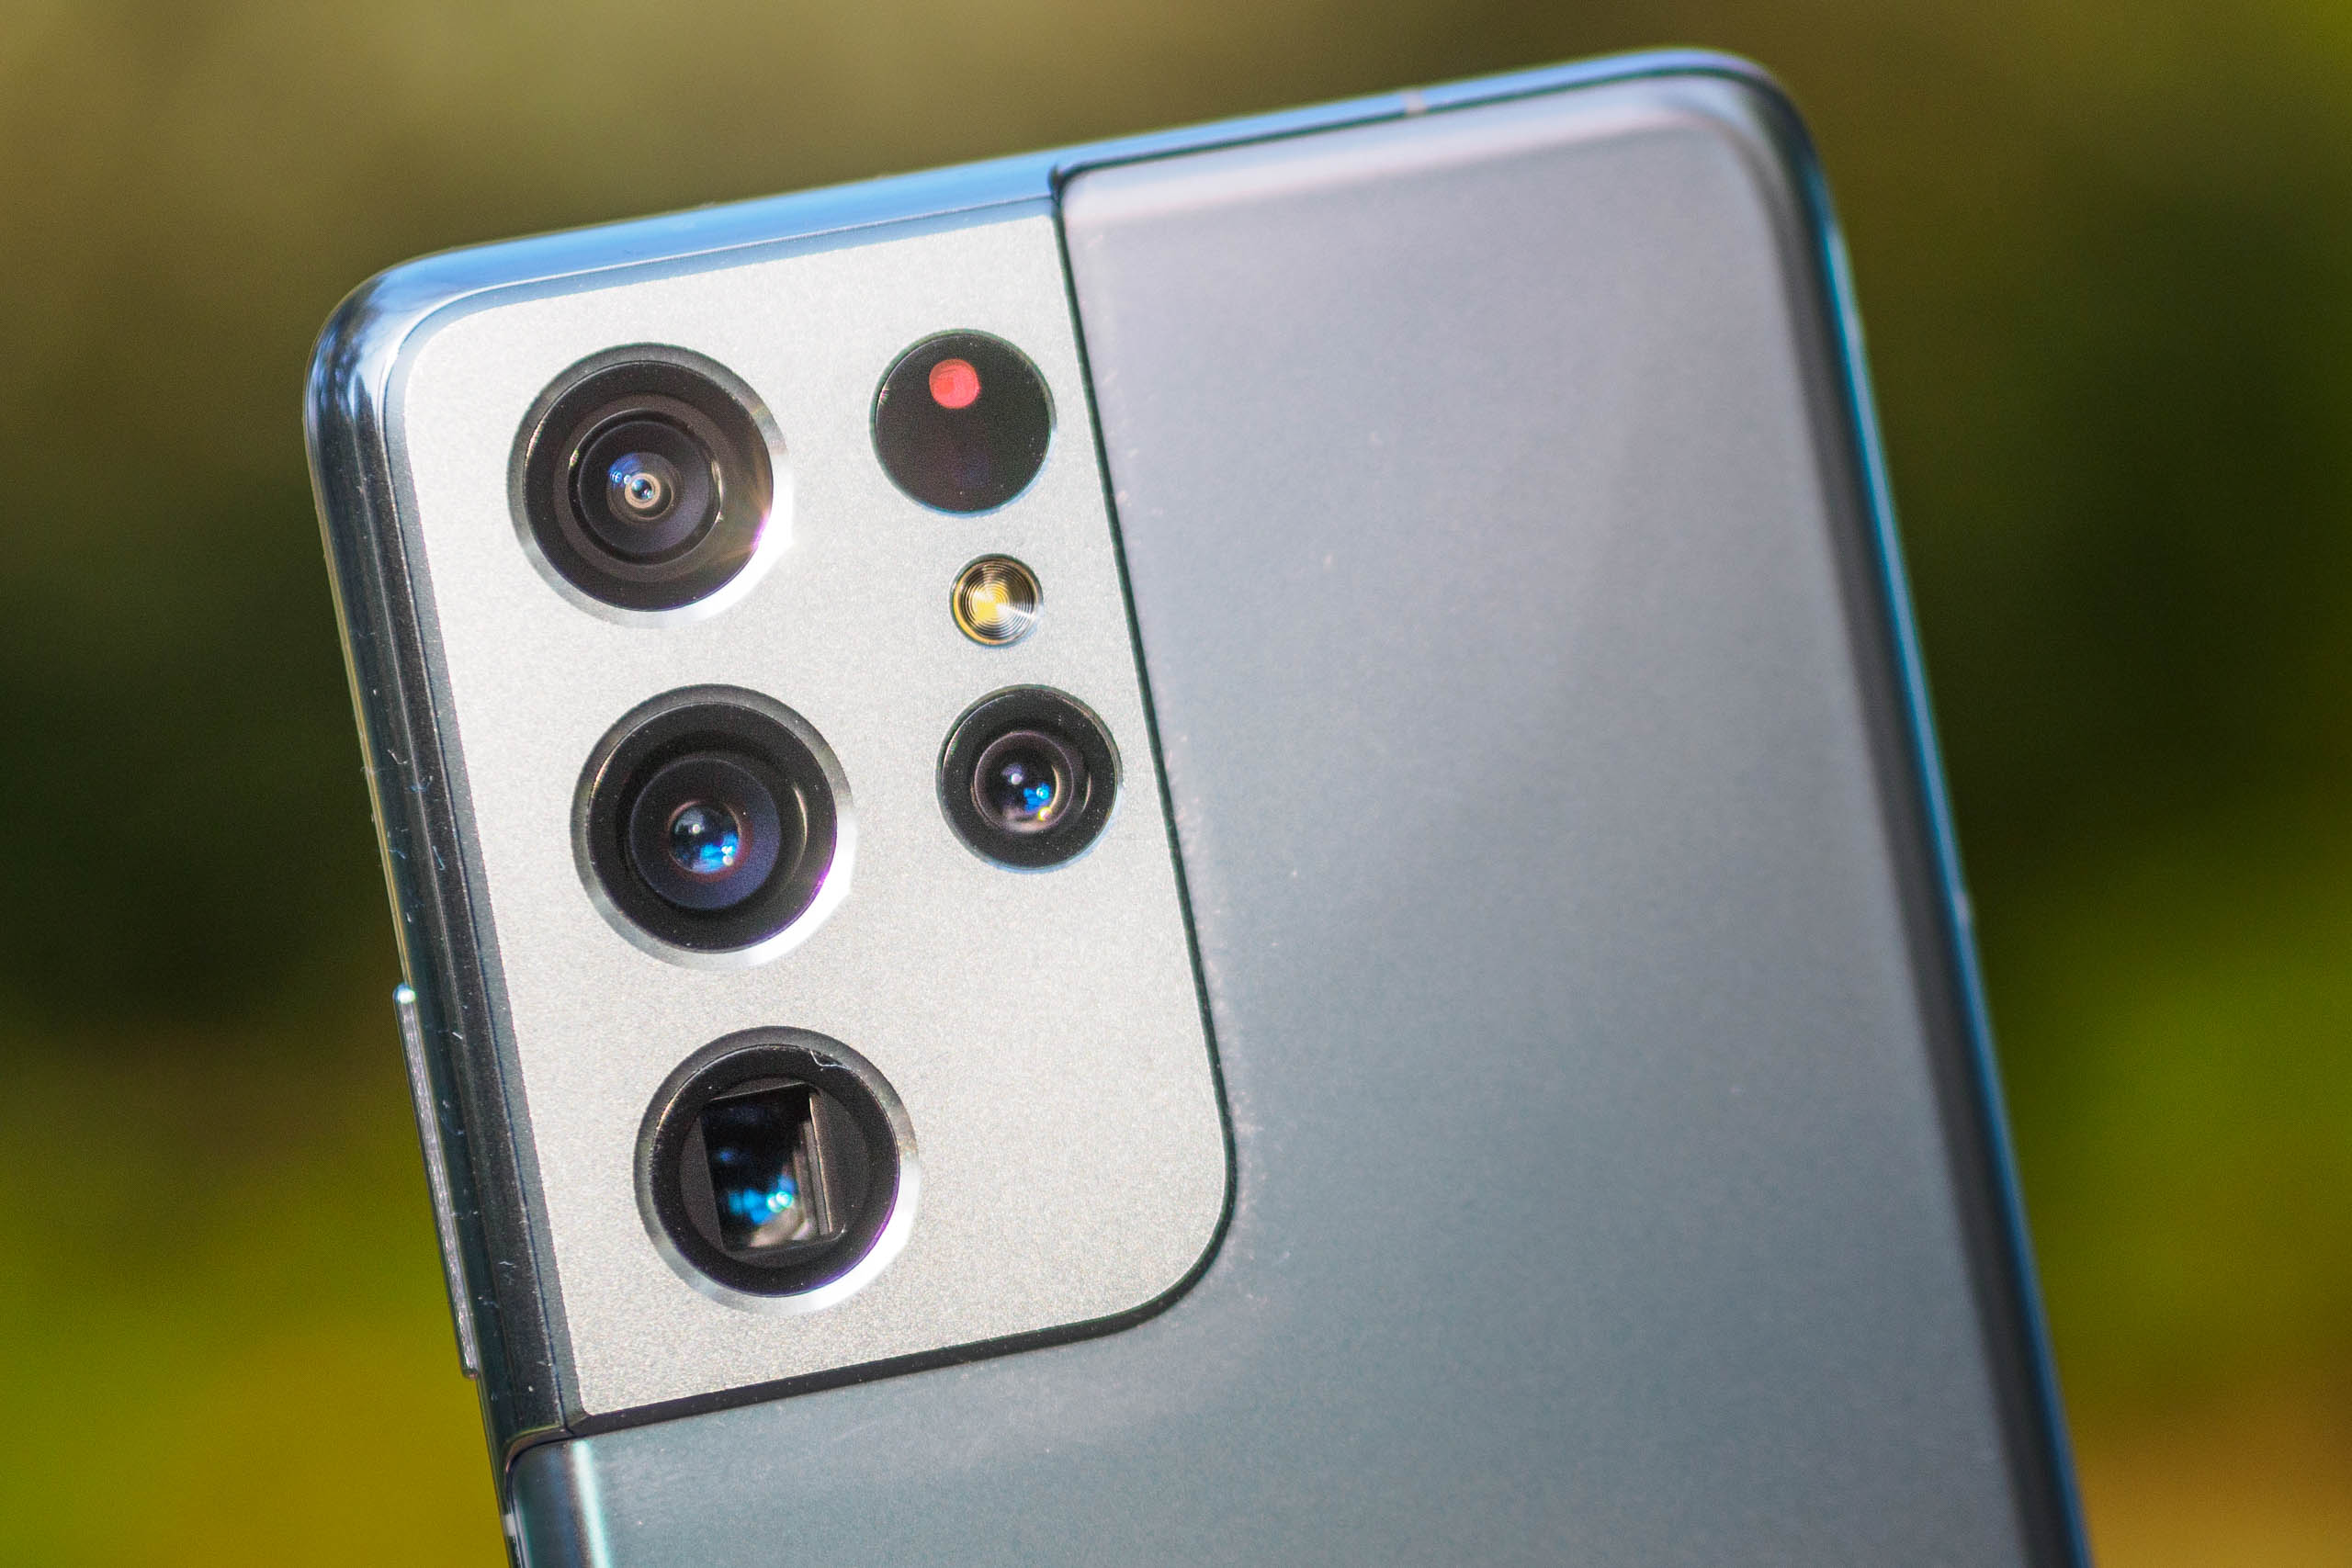 Bạn đang quan tâm đến camera của Samsung Galaxy S21 Ultra và muốn biết thêm về khả năng chụp ảnh của thiết bị? Video này sẽ cung cấp cho bạn tất cả các thông tin về khả năng chụp ảnh bằng camera cơ bản và cả camera ống kính siêu tele của nó - là một trong những điểm nhấn của sản phẩm này.